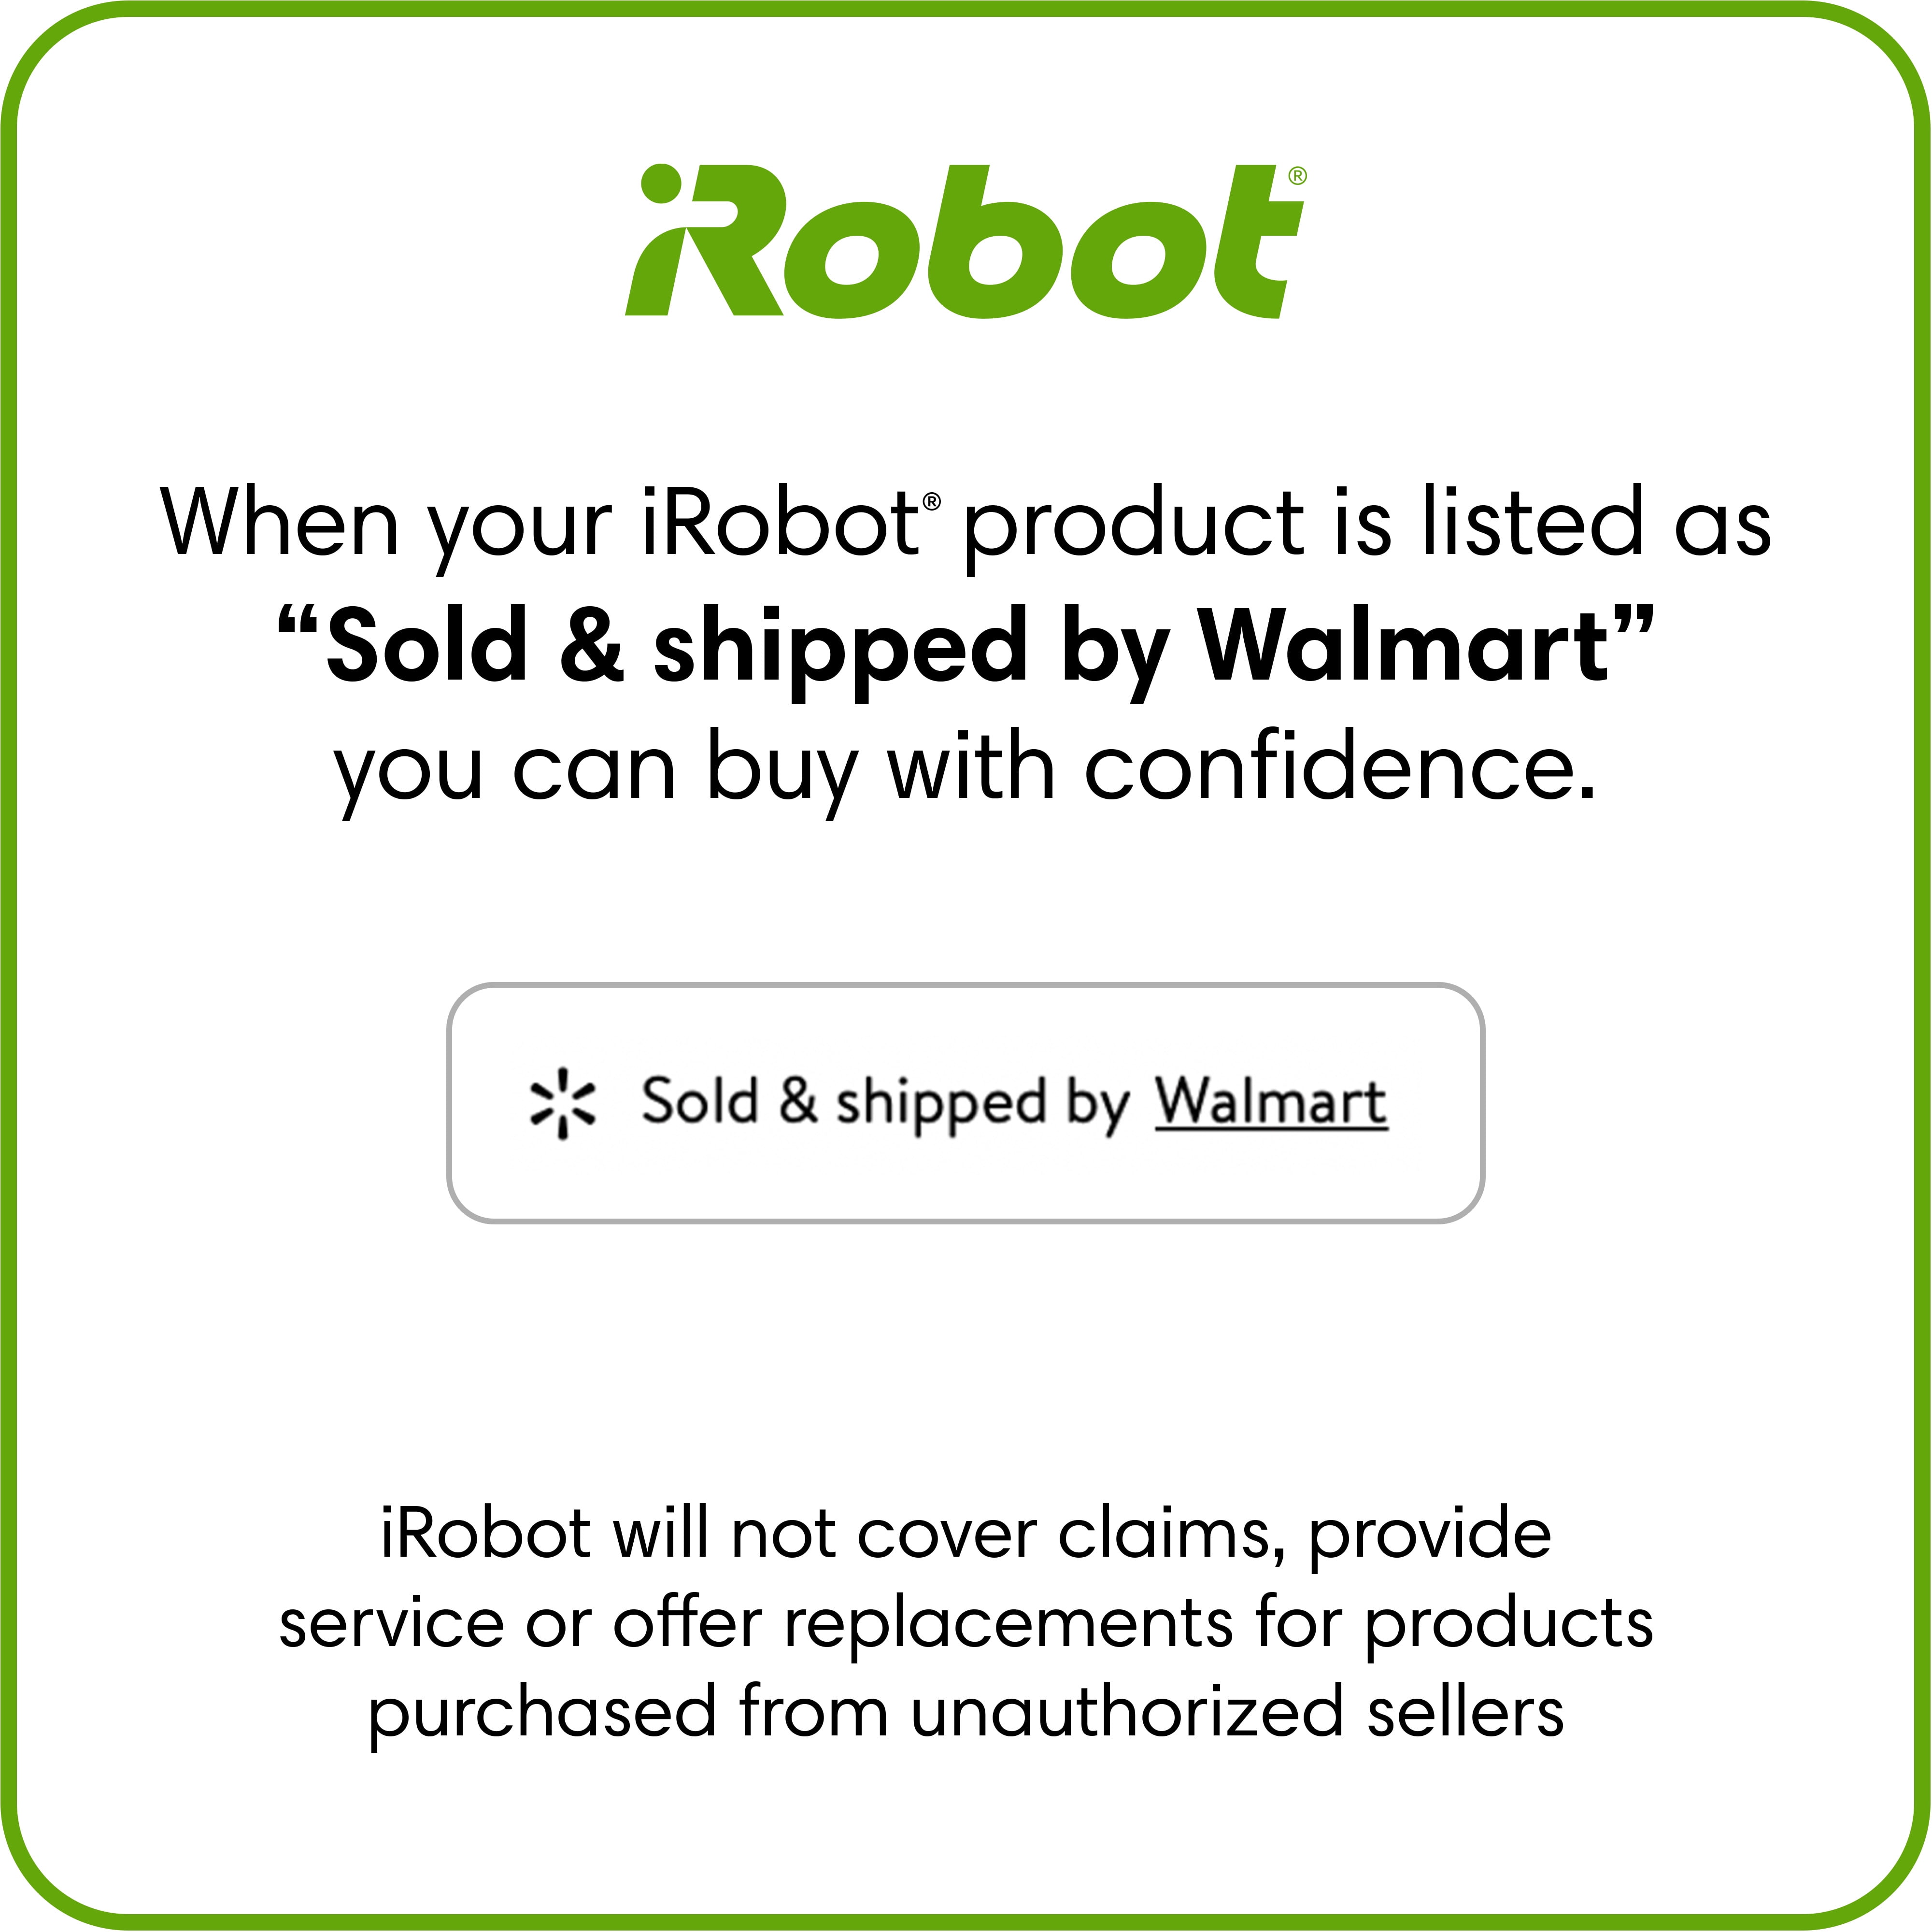 Kit d'accessoires de remplacement compatible iRobot Roomba E-I Series